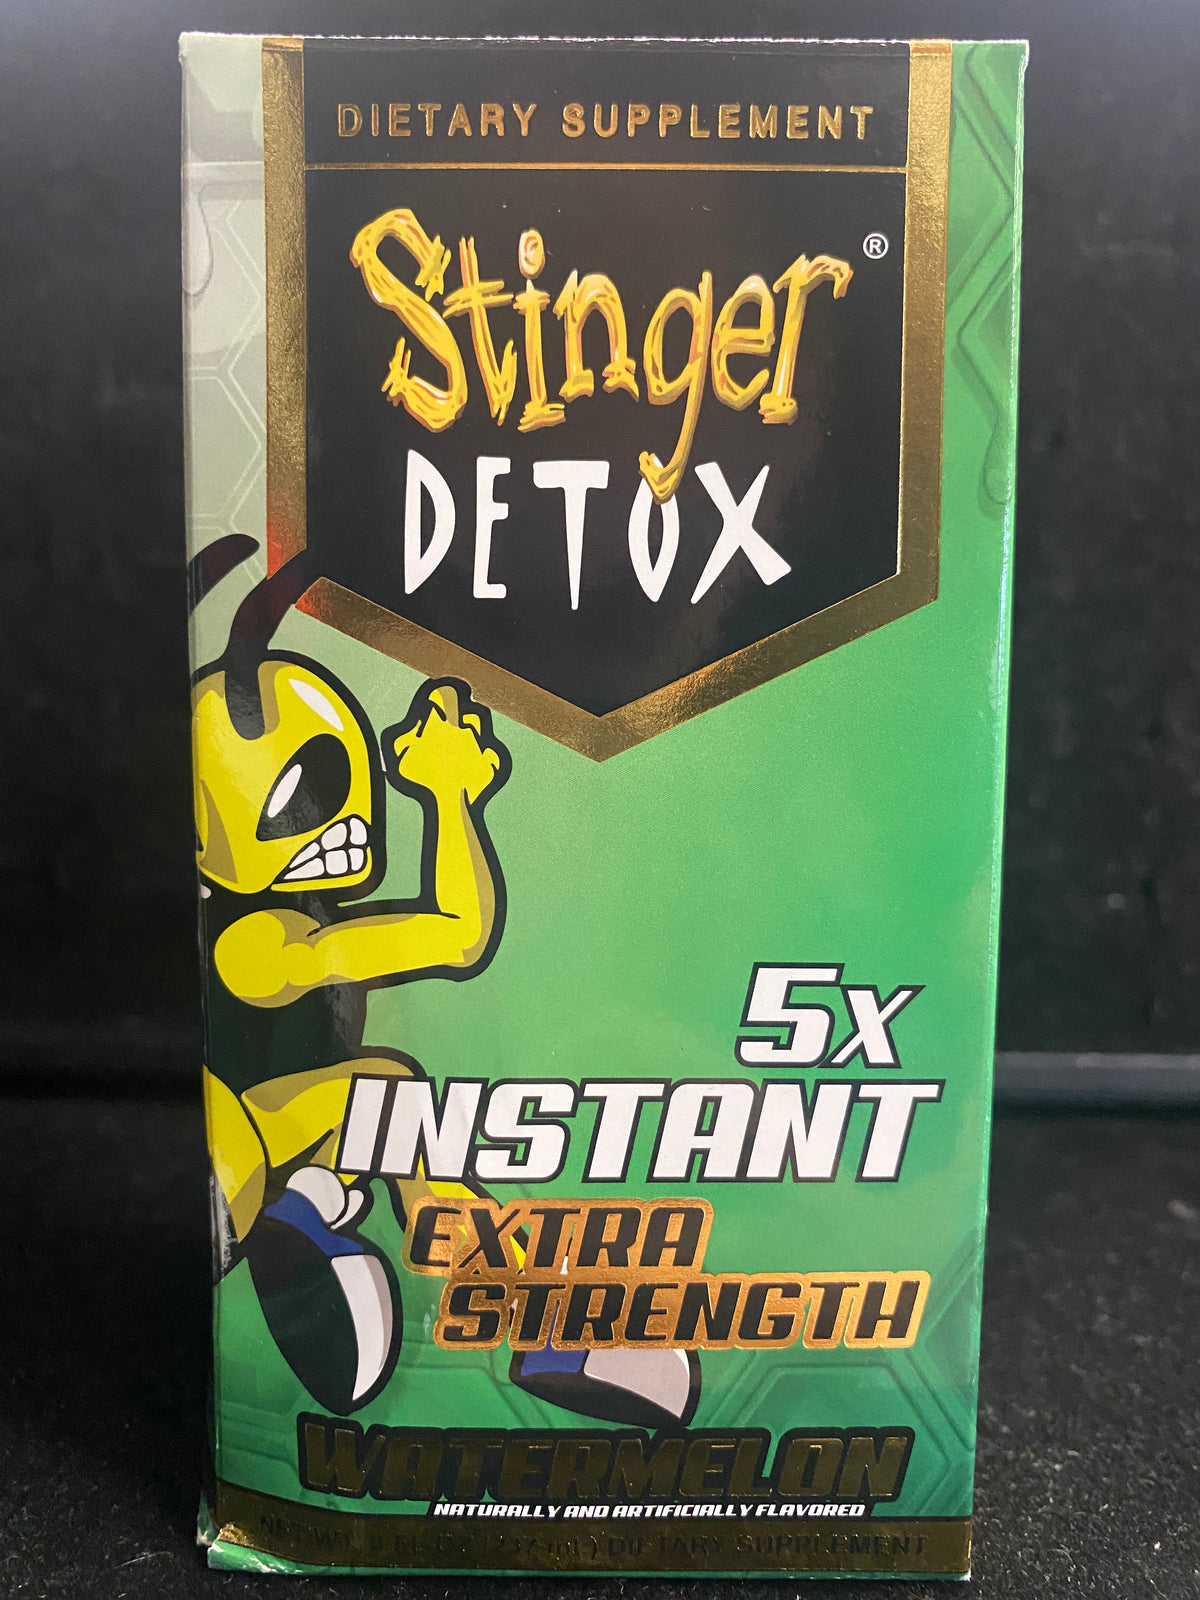 Stinger detox 5x instant